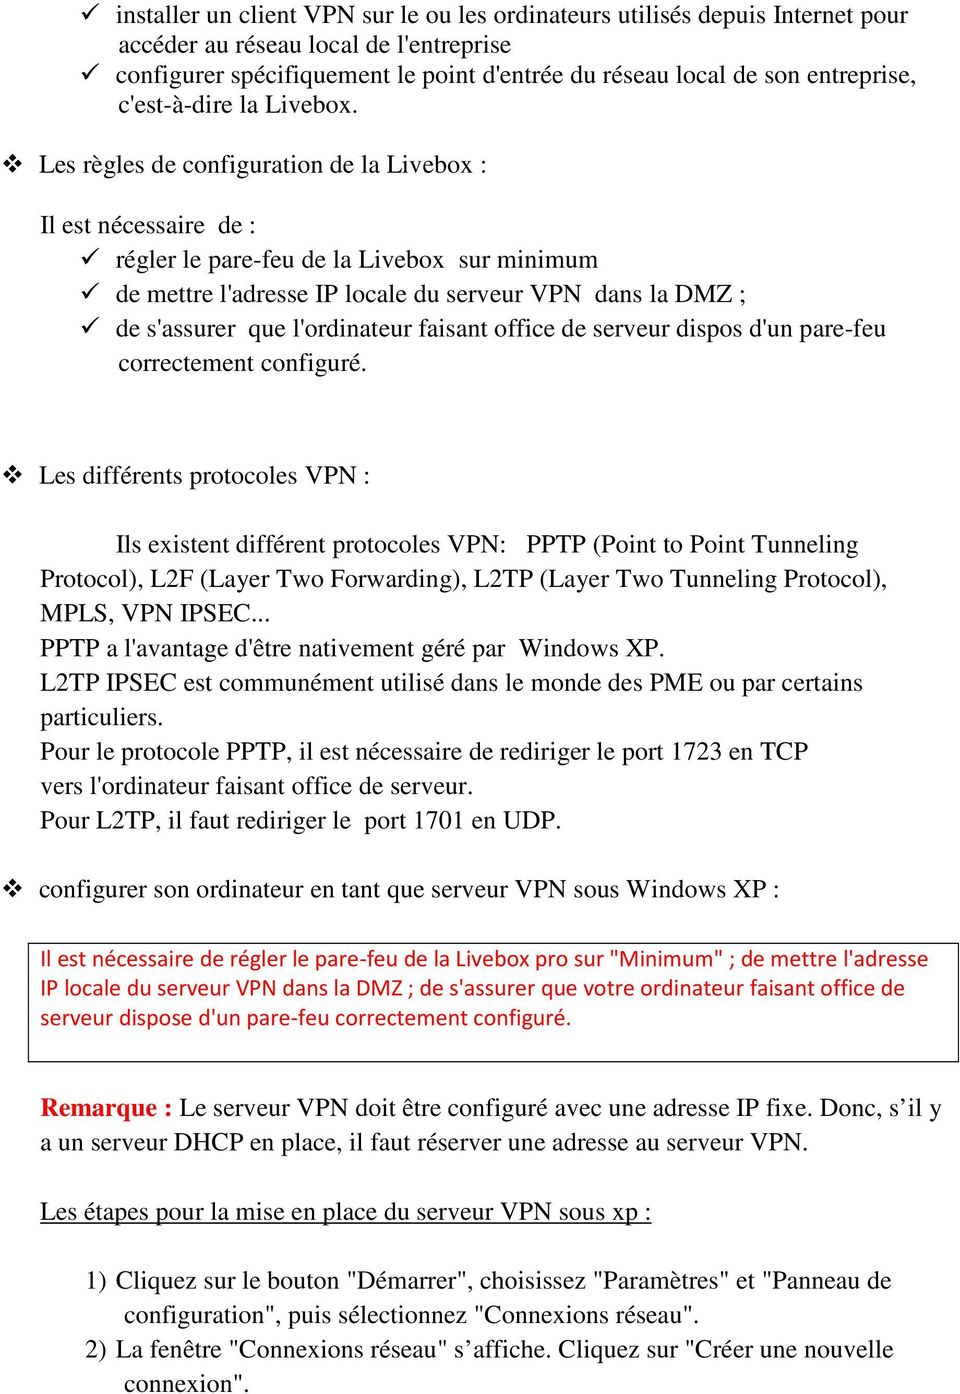 Les règles de configuration de la Livebox : Il est nécessaire de : régler le pare-feu de la Livebox sur minimum de mettre l'adresse IP locale du serveur VPN dans la DMZ ; de s'assurer que